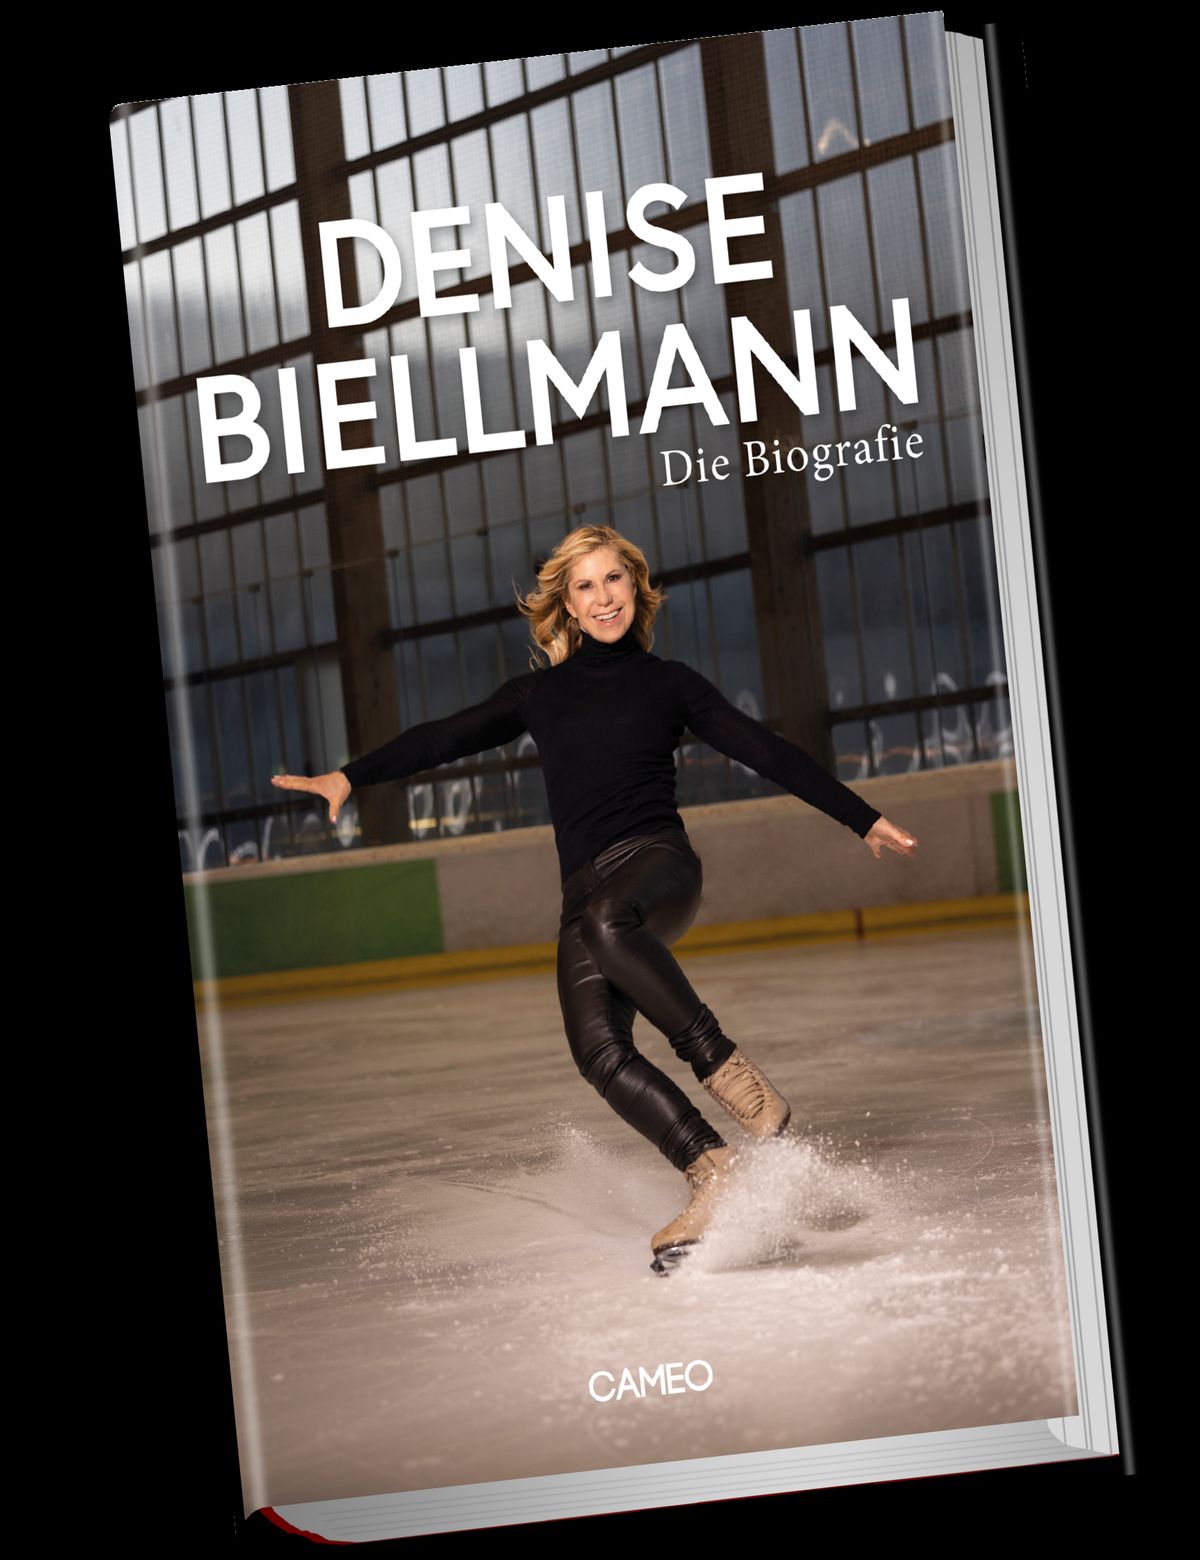 Foto: Denise Biellmann veröffentlicht ihre offizielle Biografie.